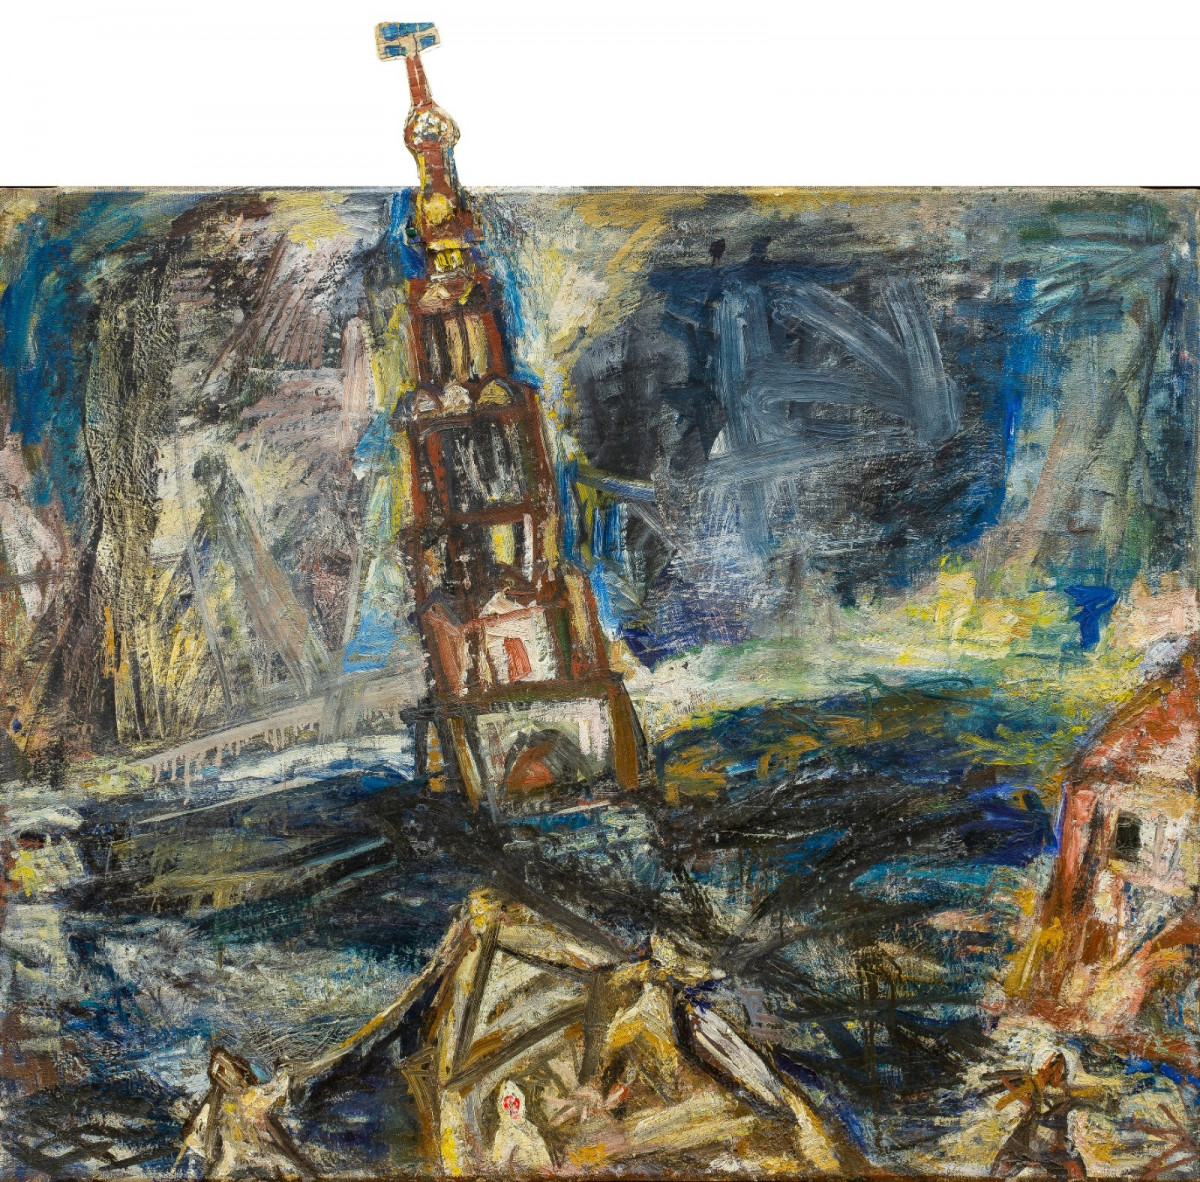 Выставка «Павел Никонов. Реализм без границ» откроется в НГХМ 23 декабря